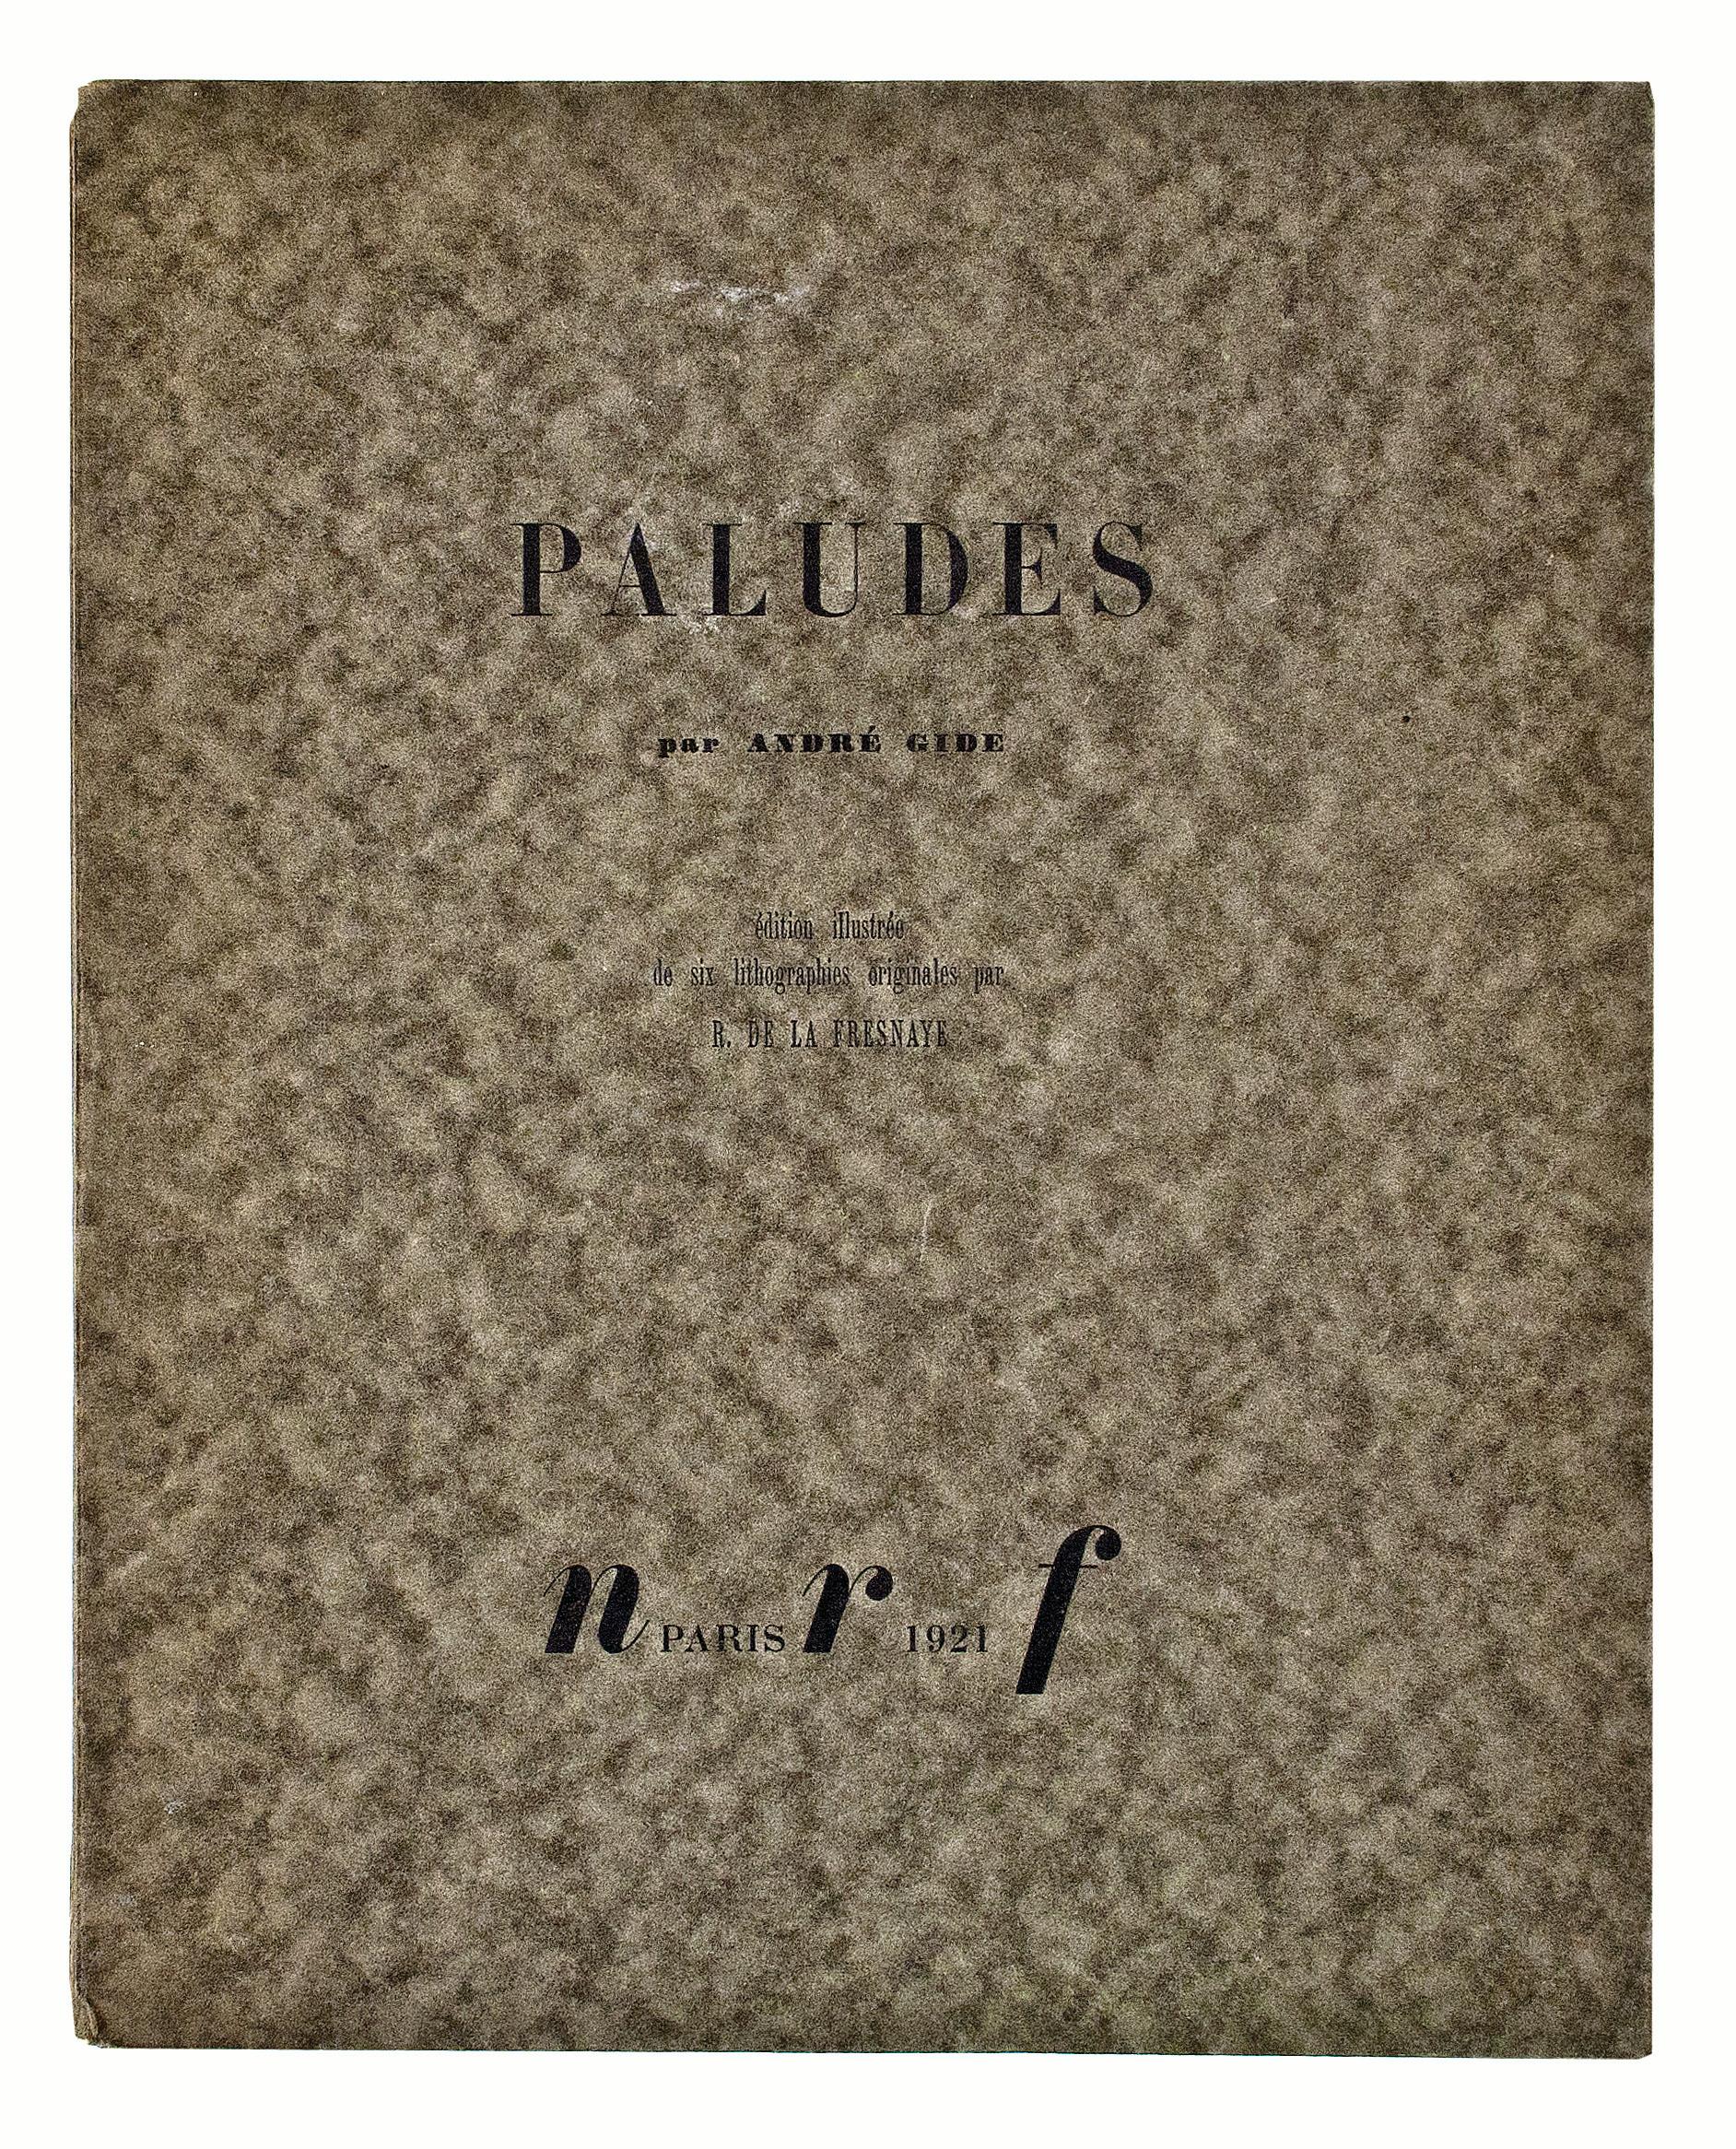 Paludes. - Cubist Art by Roger de la Fresnaye